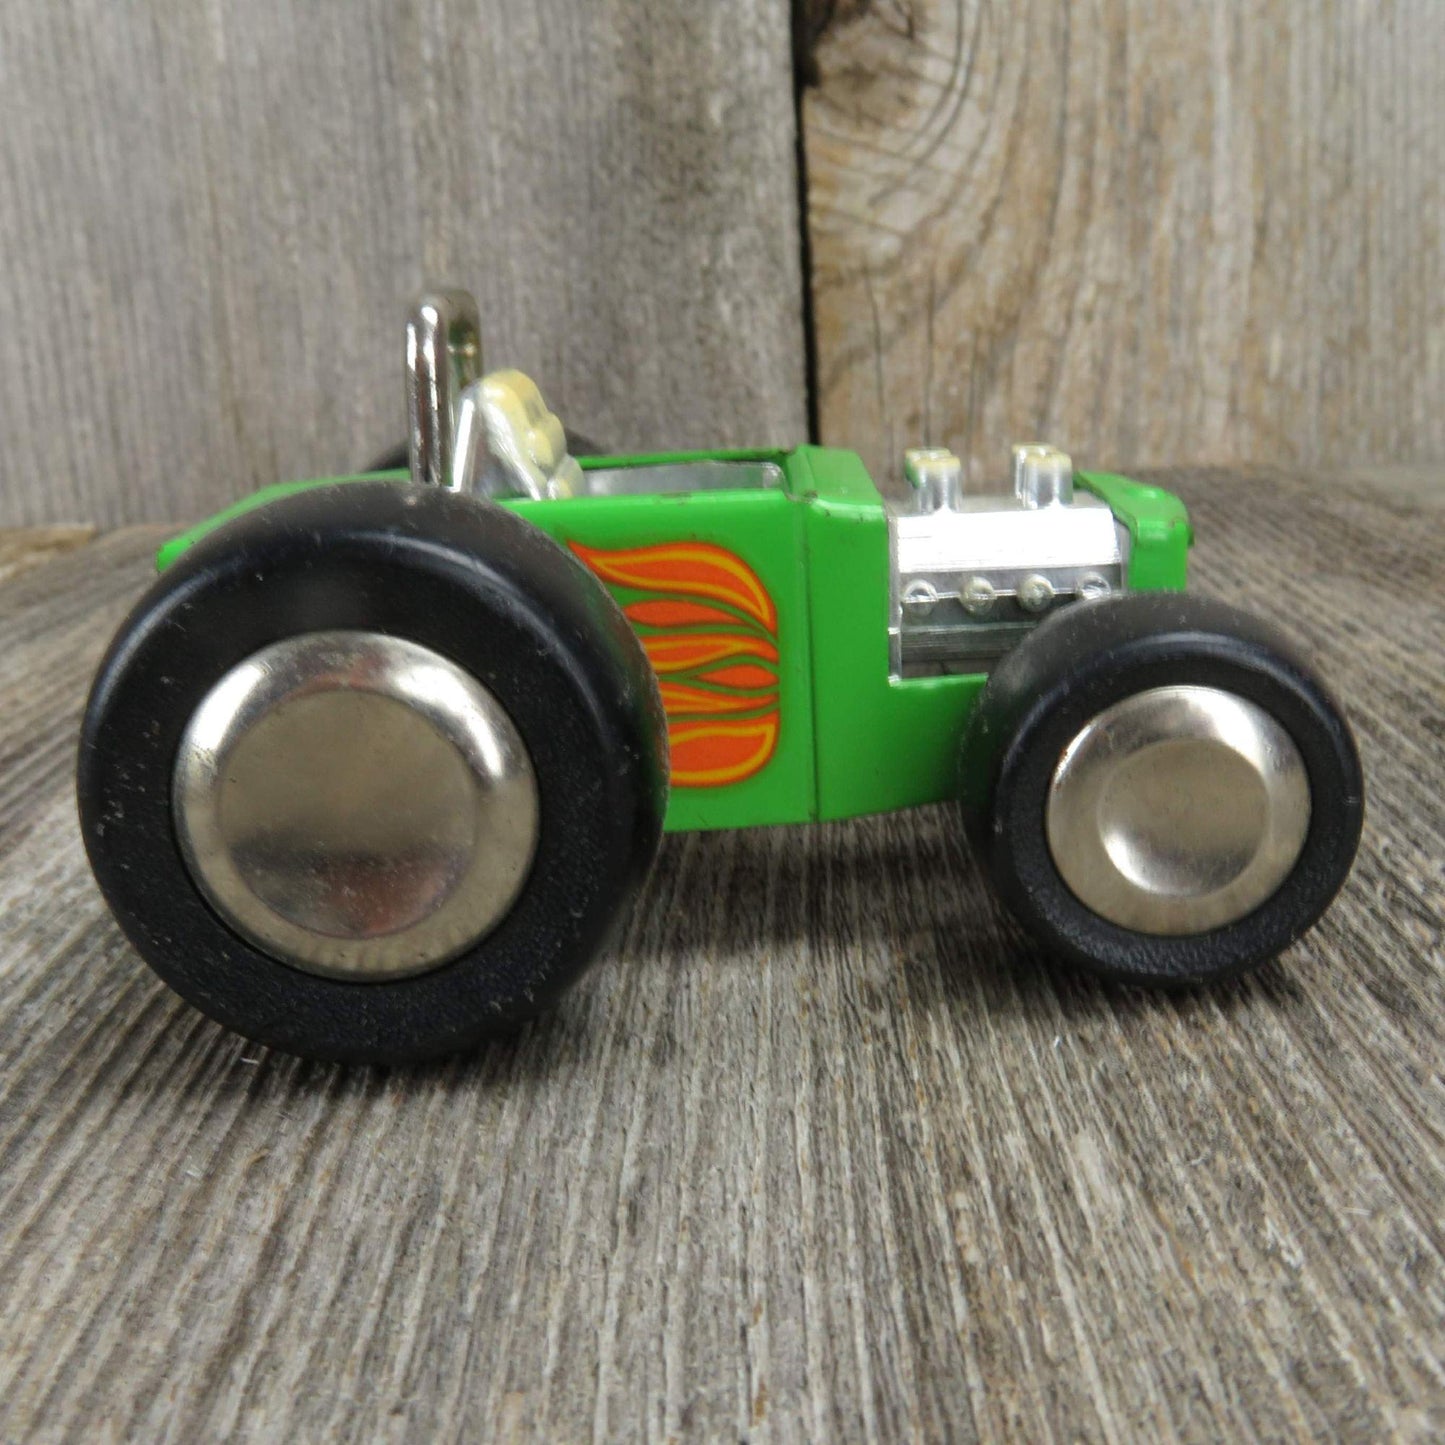 Vintage Buddy L Roadster Pressed Steel Toy Car Hot Rod Dune Buggy Drag Racer